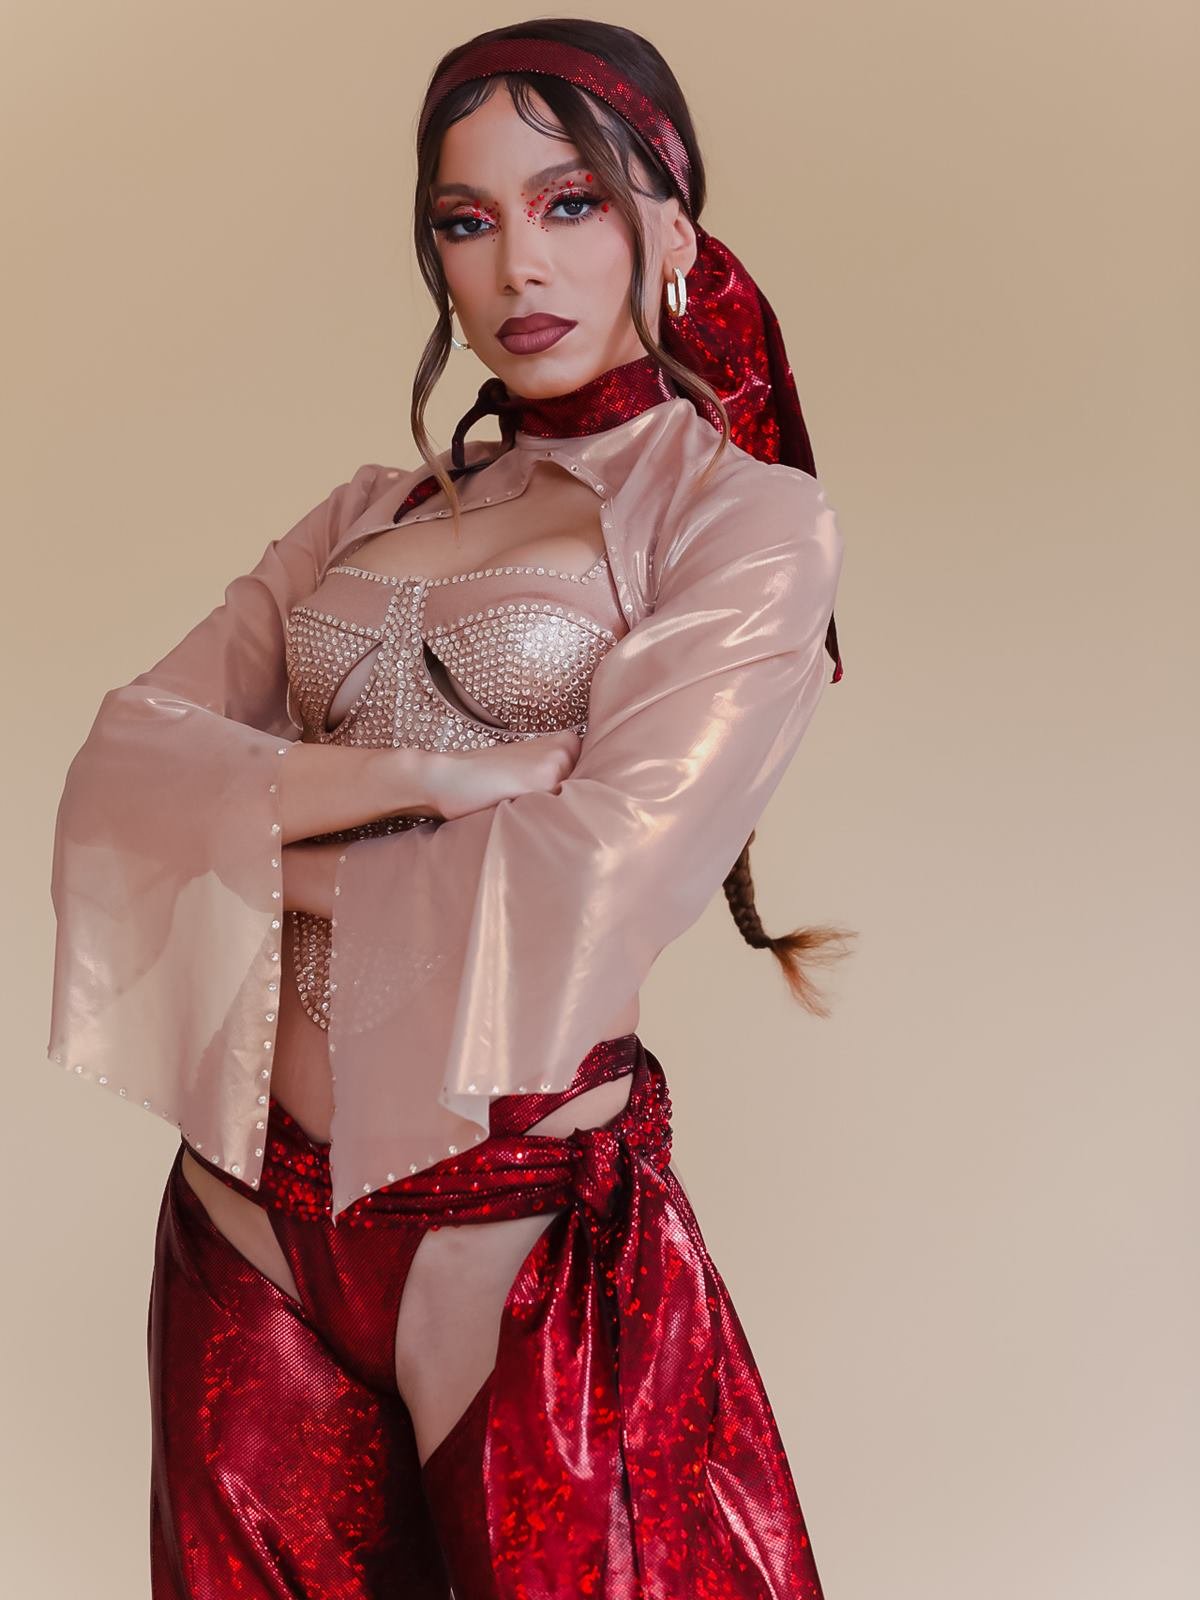 A cantora Anitta, uma mulher parda e jovem, de cabelo ondulado castanho, posa para foto em um fundo bege. Ela usa uma roupa brilhante, rosa e vermelha, feita inspirada nas roupas da revolucionária Anita Garibaldi. - Metrópoles